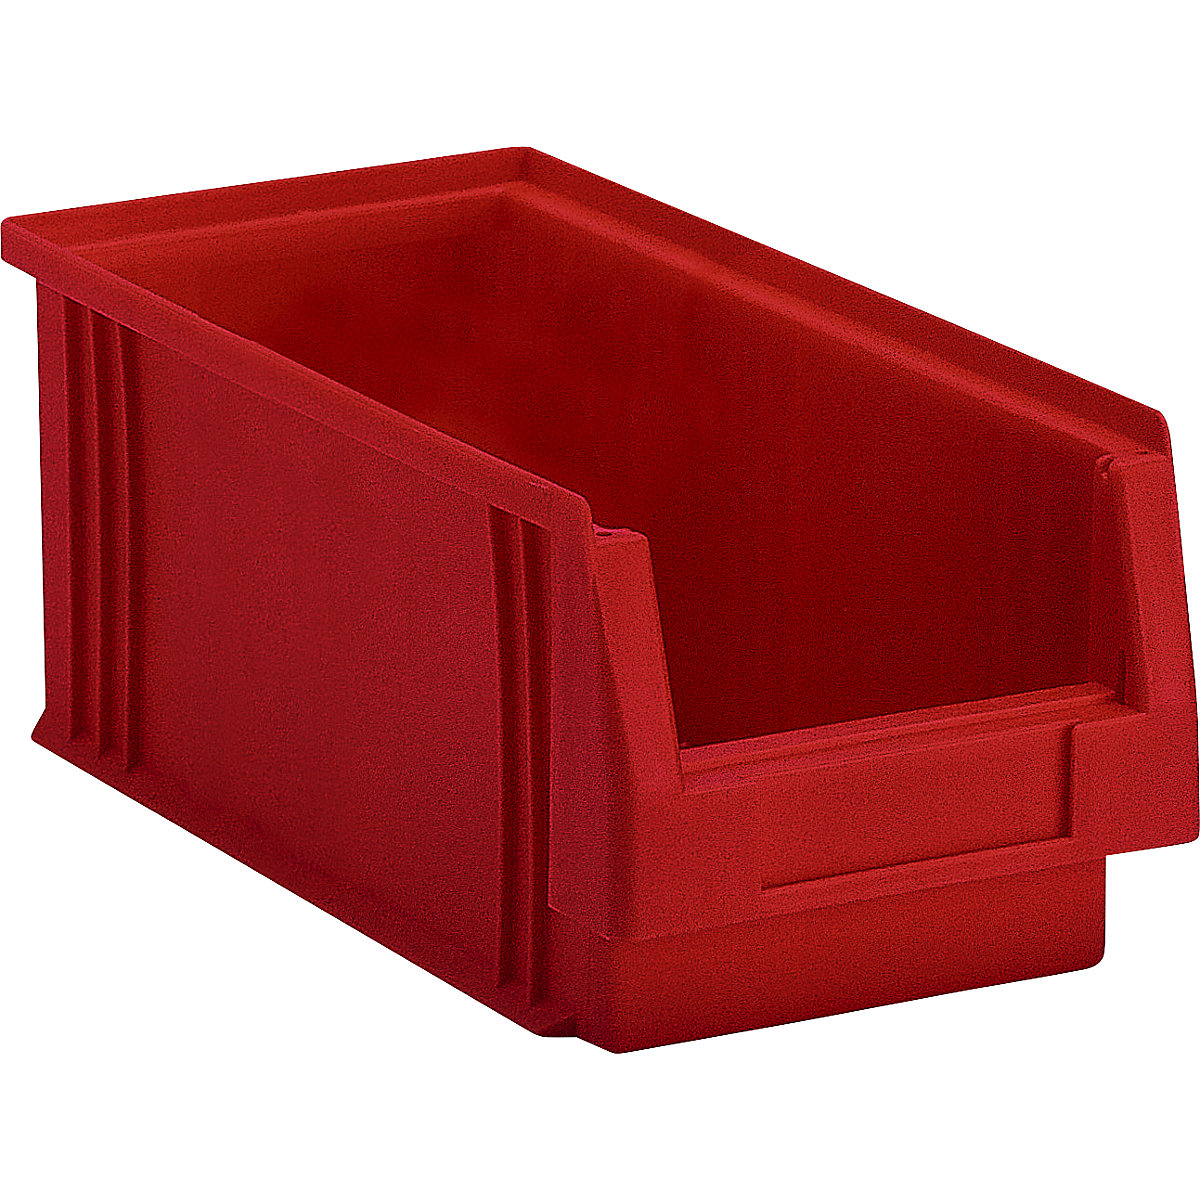 Otwarty pojemnik magazynowy z polipropylenu, poj. 3,5 l, opak. 25 szt., czerwony-6